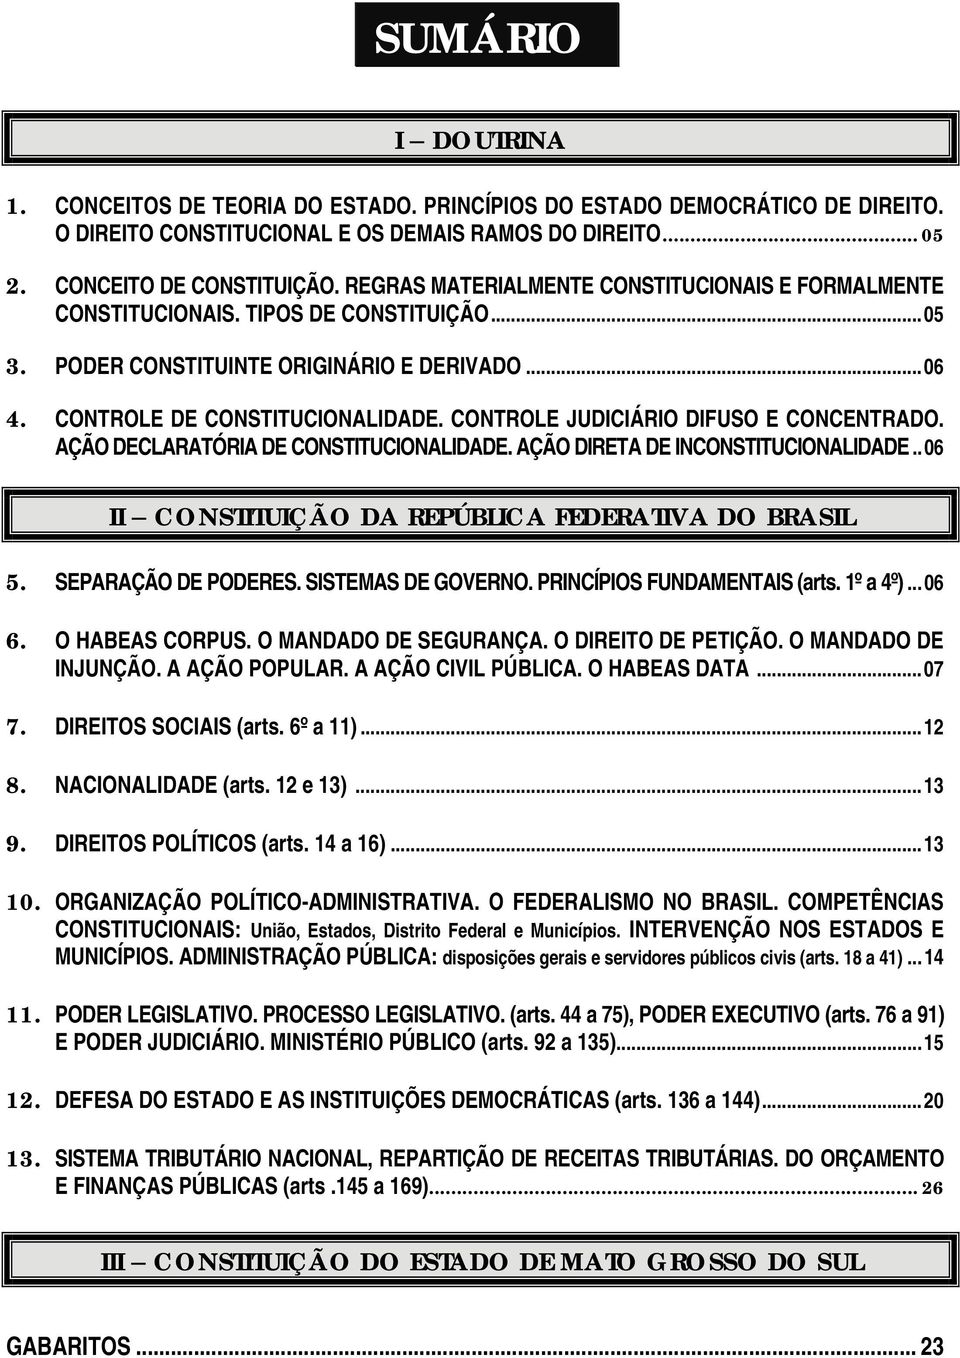 CONTROLE JUDICIÁRIO DIFUSO E CONCENTRADO. AÇÃO DECLARATÓRIA DE CONSTITUCIONALIDADE. AÇÃO DIRETA DE INCONSTITUCIONALIDADE..06 II CONSTITUIÇÃO DA REPÚBLICA FEDERATIVA DO BRASIL 5. SEPARAÇÃO DE PODERES.